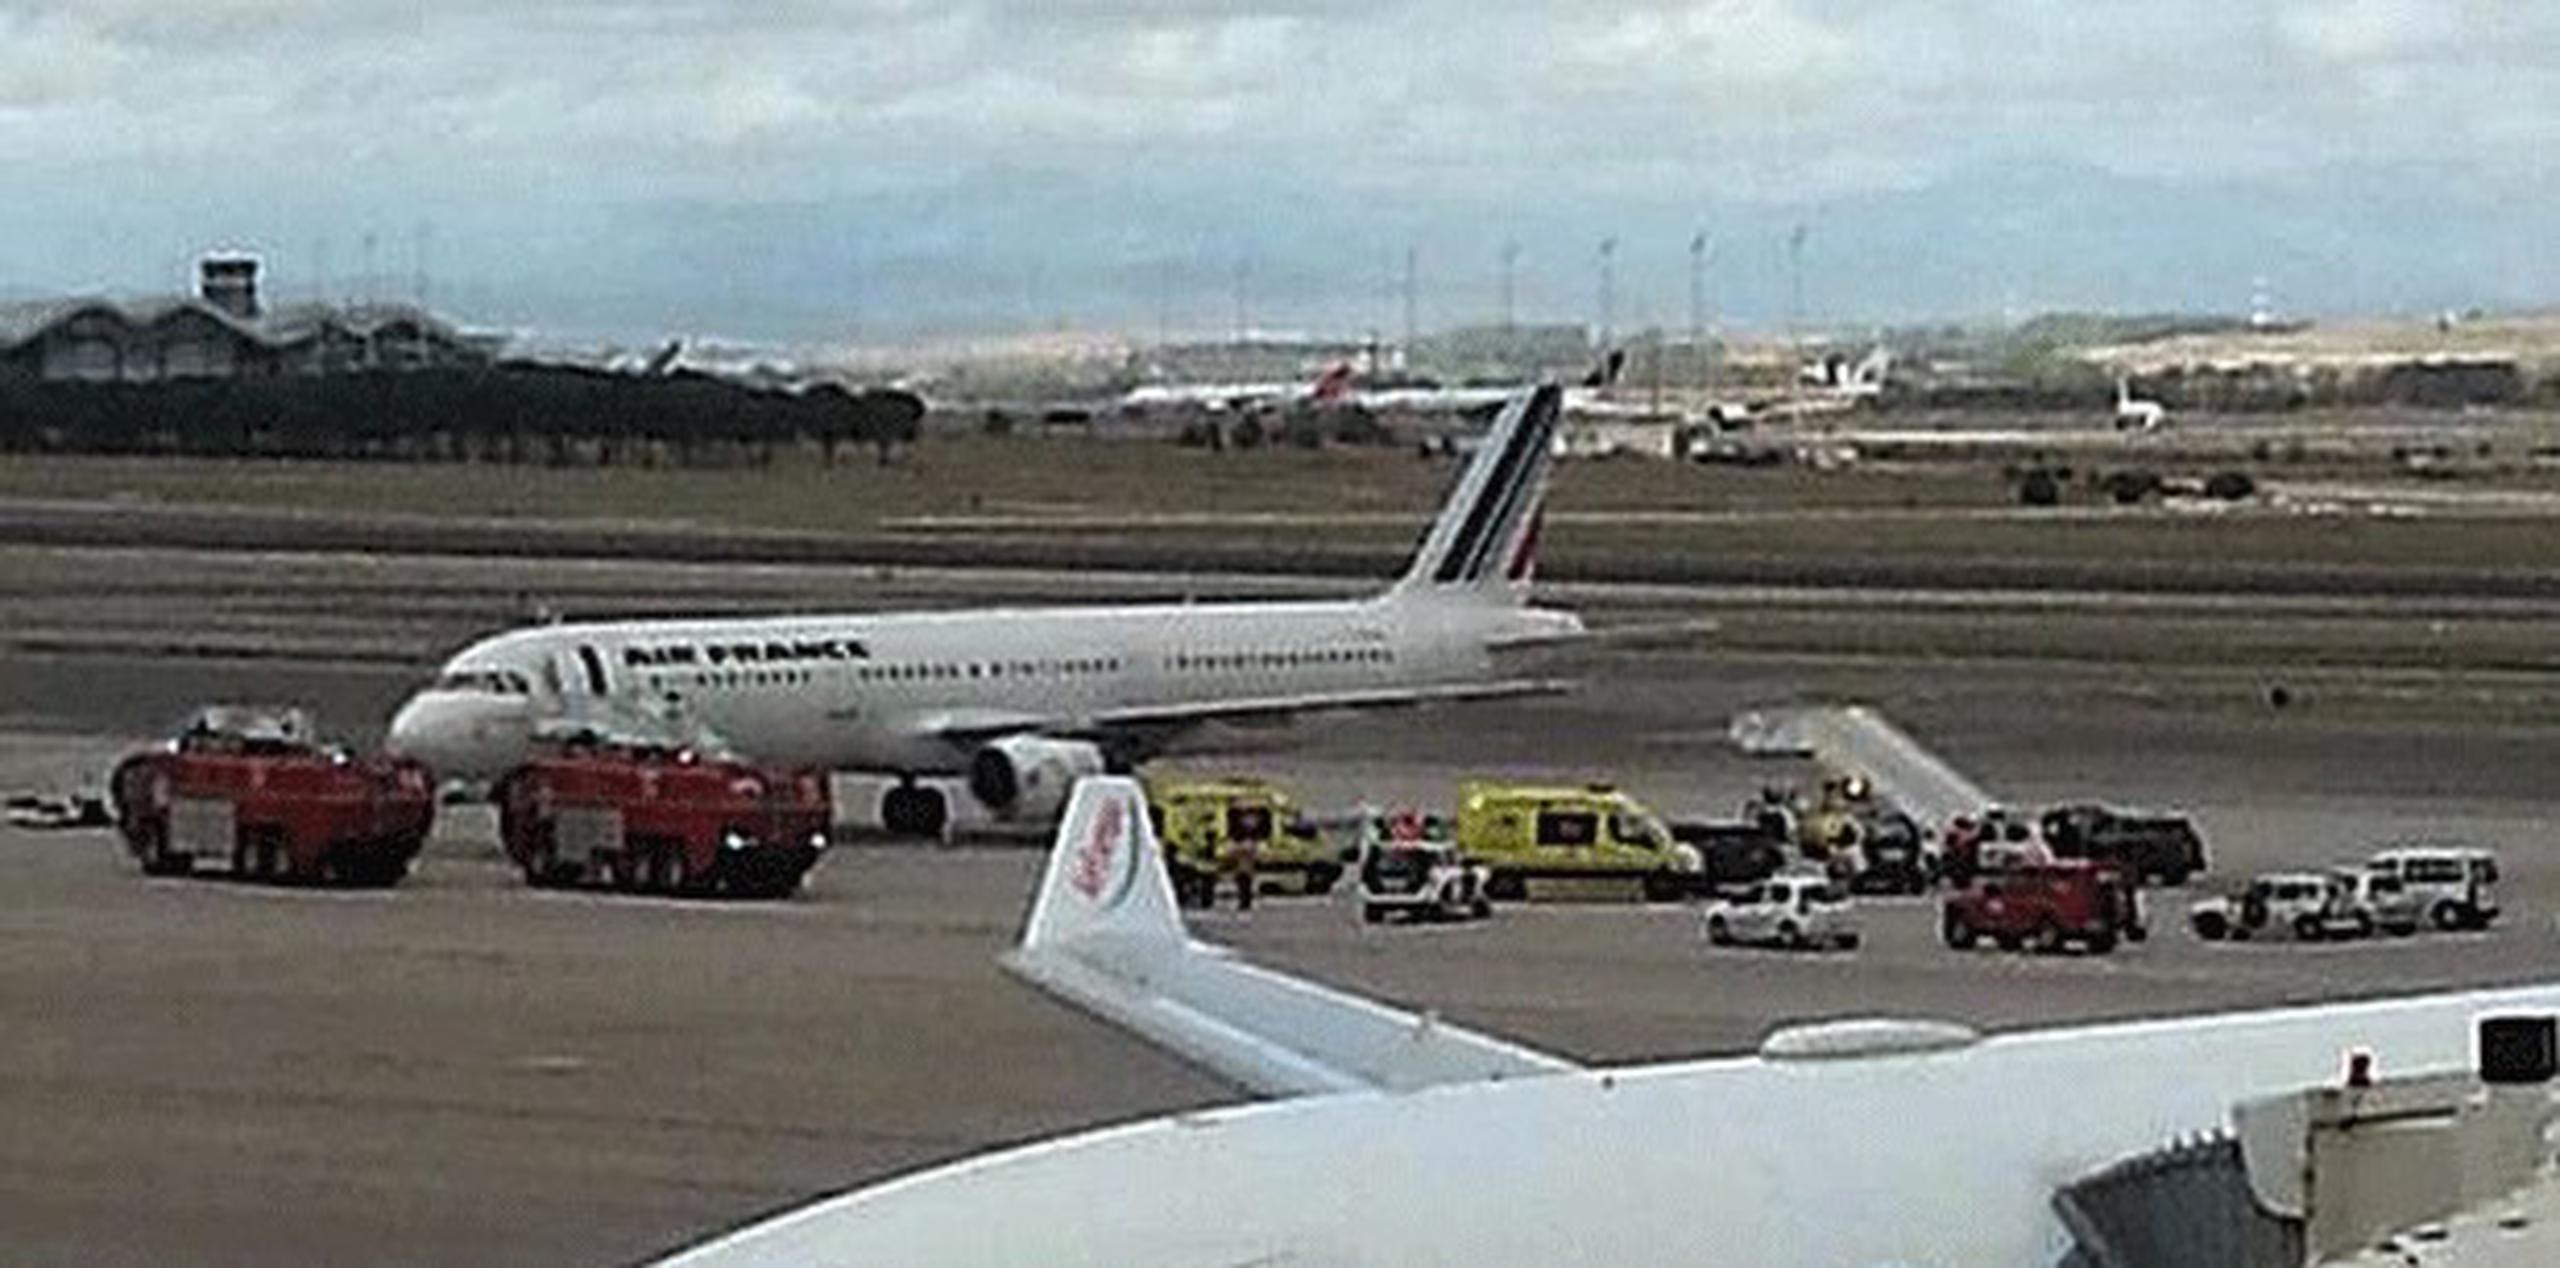 Las autoridades aislaron una aeronave a su llegada al aeropuerto de Madrid como medida de seguridad. (AP Photo/Antoni Manchado)